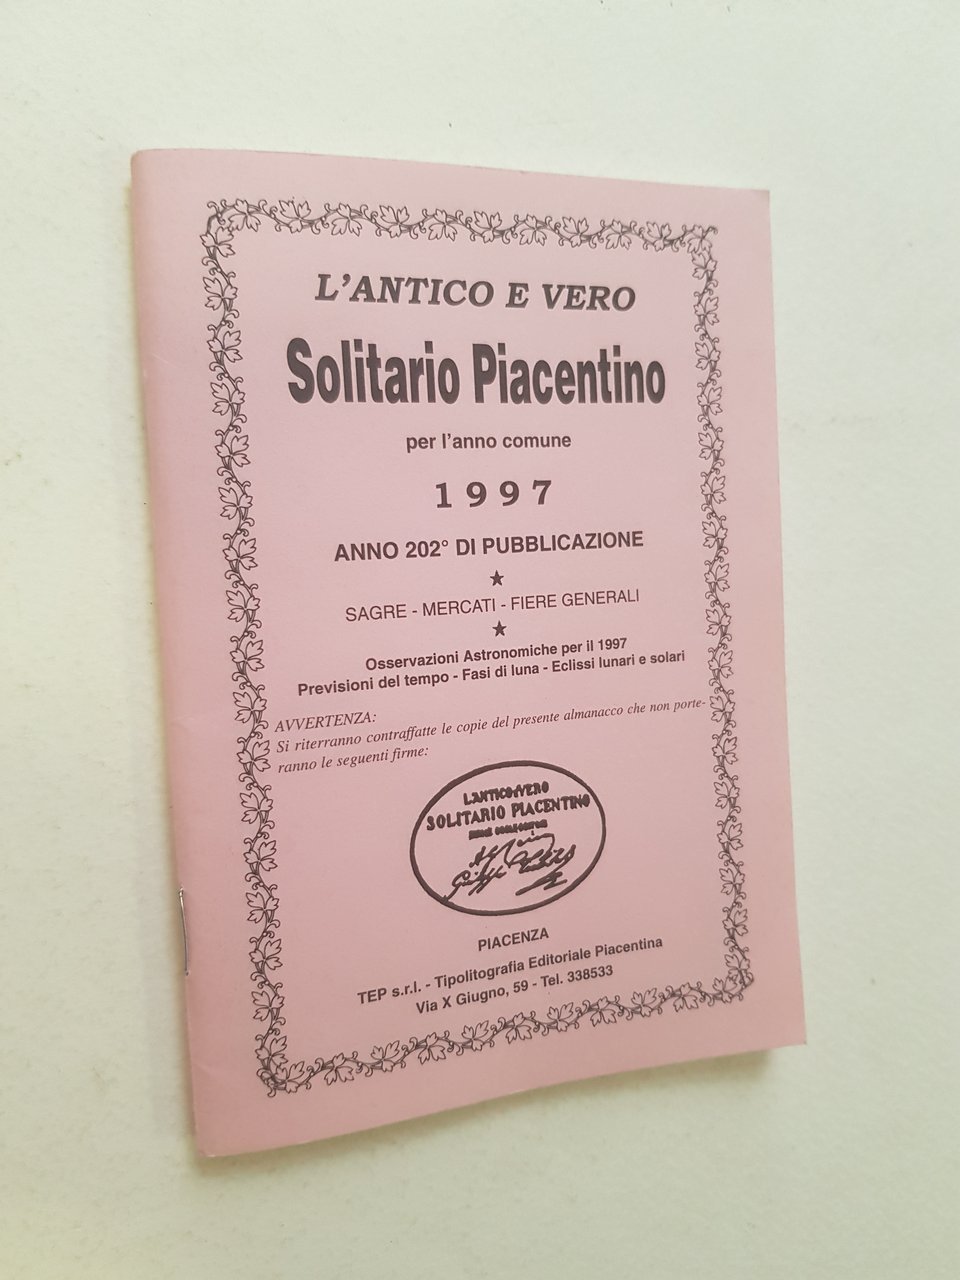 L'antico e vero Solitario Piacentino per l'anno comune 1997.